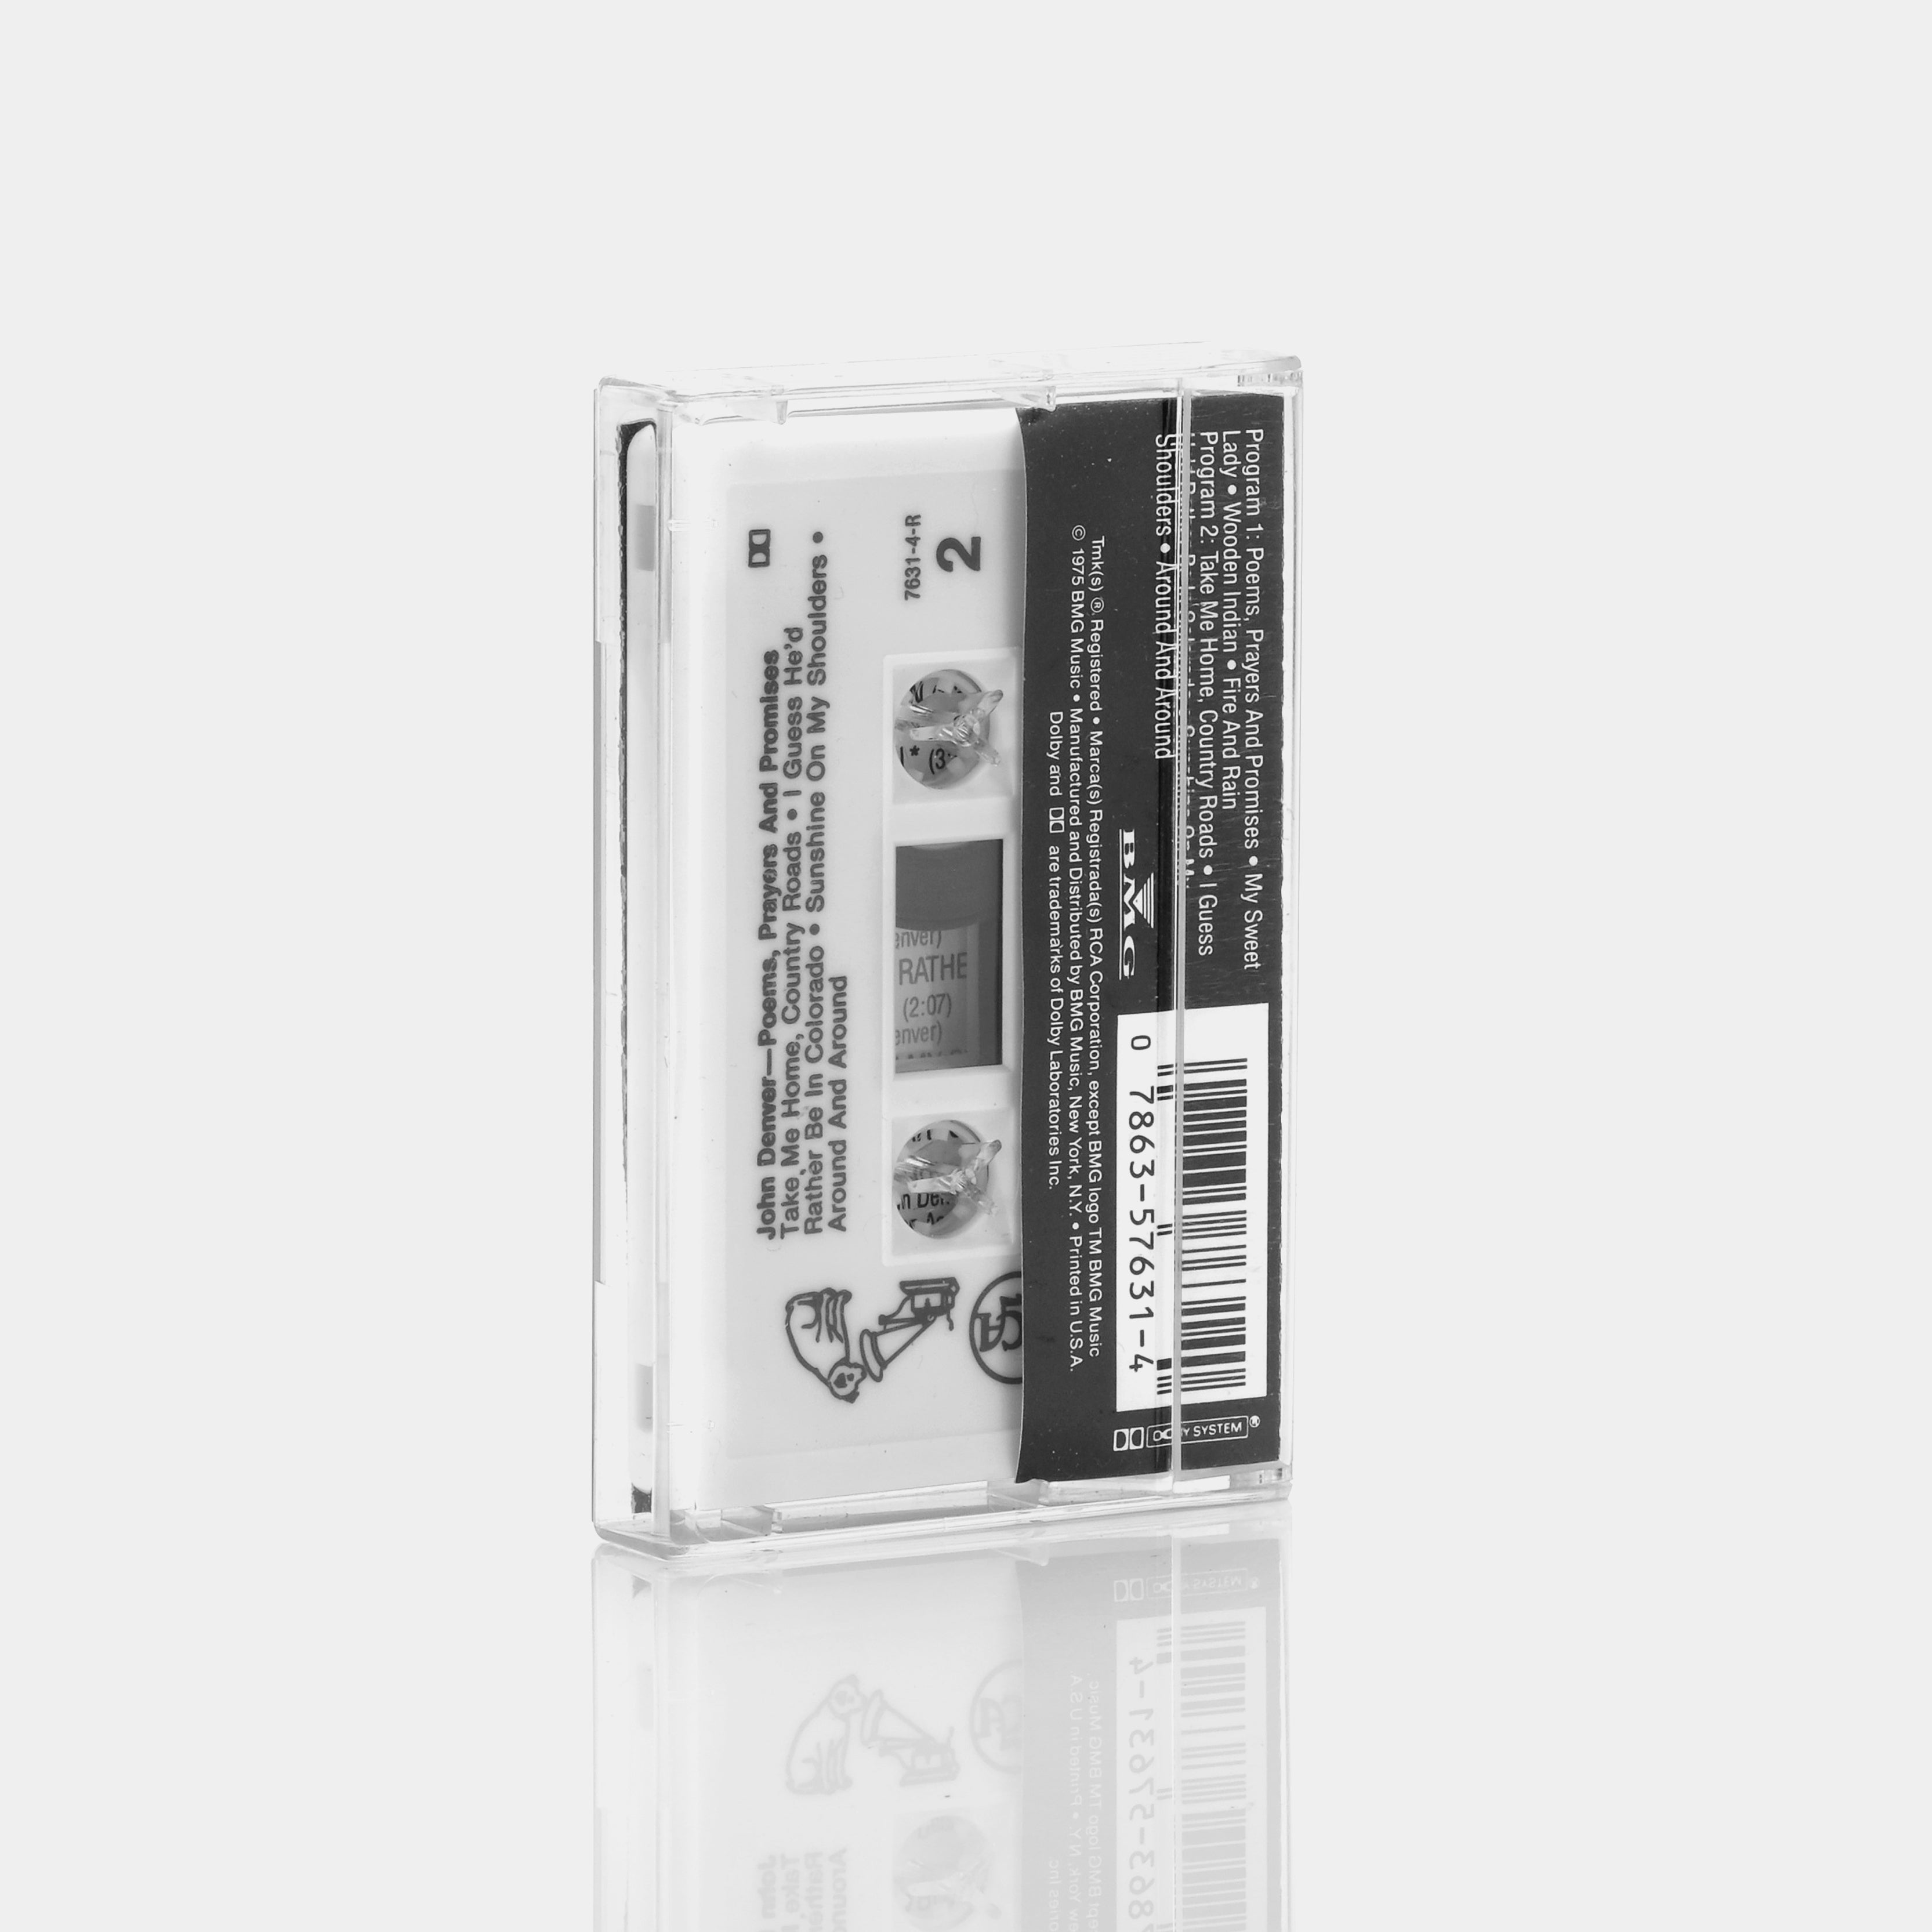 John Denver - Poems, Prayers, & Promises Cassette Tape